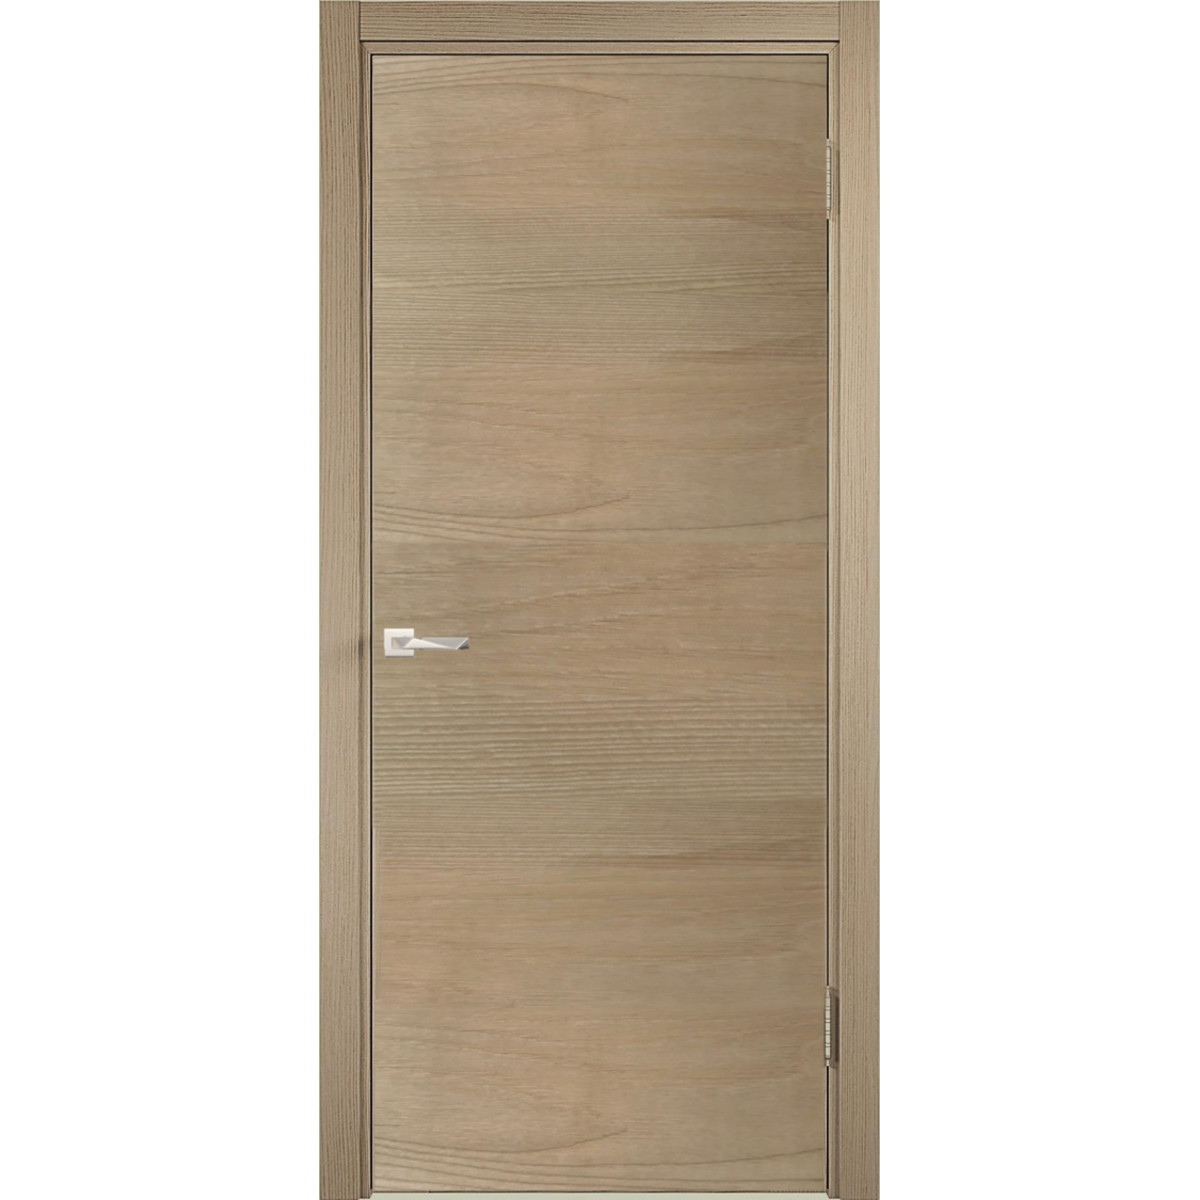 Дверь межкомнатная глухая c замком в комплекте 80x200 см ламинация, цвет ясень коричневый